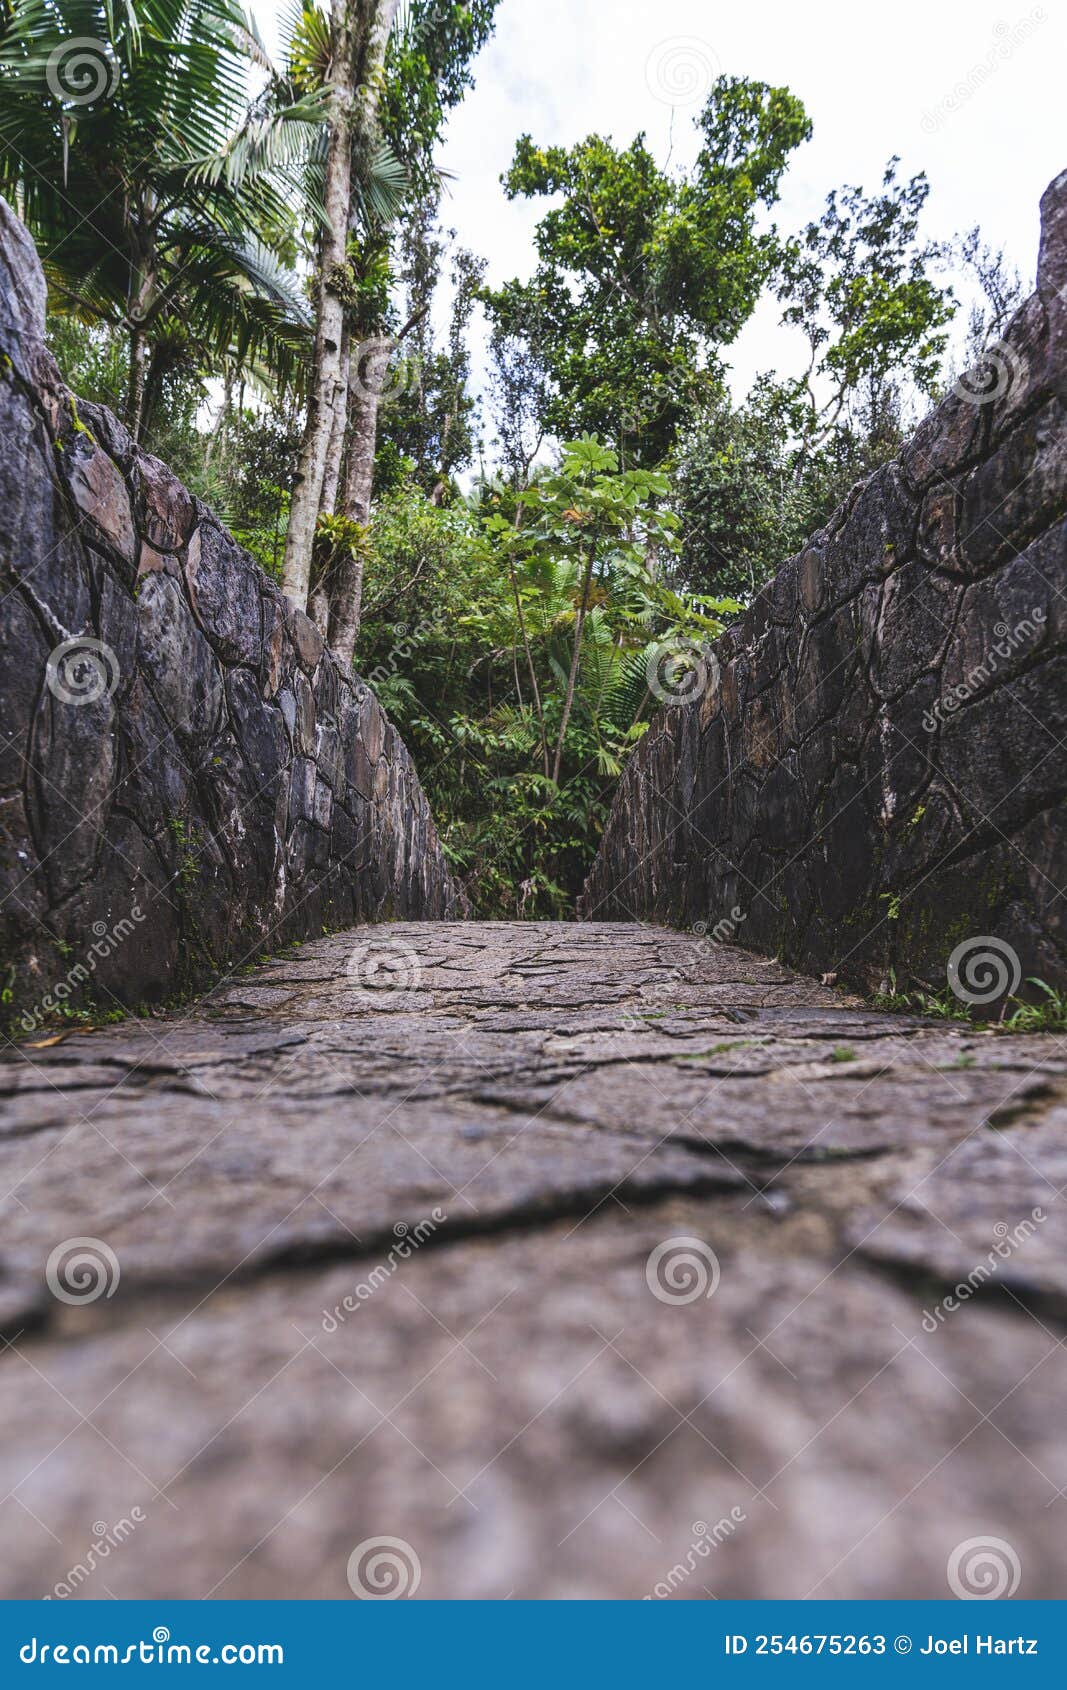 stone bridge at bano grande swim area in el yunque national forest, puerto rico